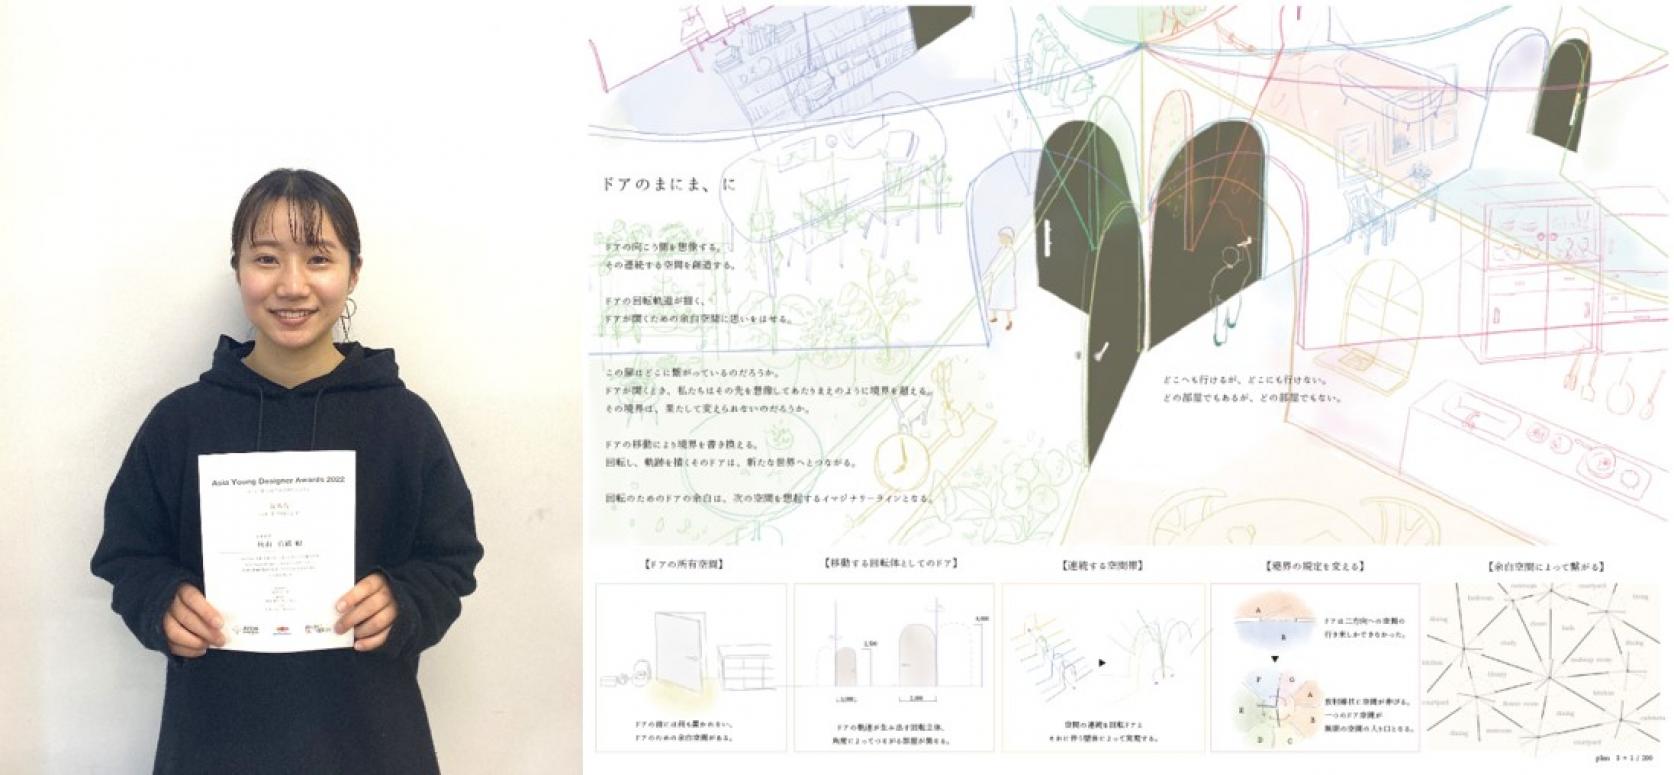 建築学科4年秋山真緩さんが、ASIA YOUNG DESIGNER AWARDS 2022において優秀賞を受賞しました。